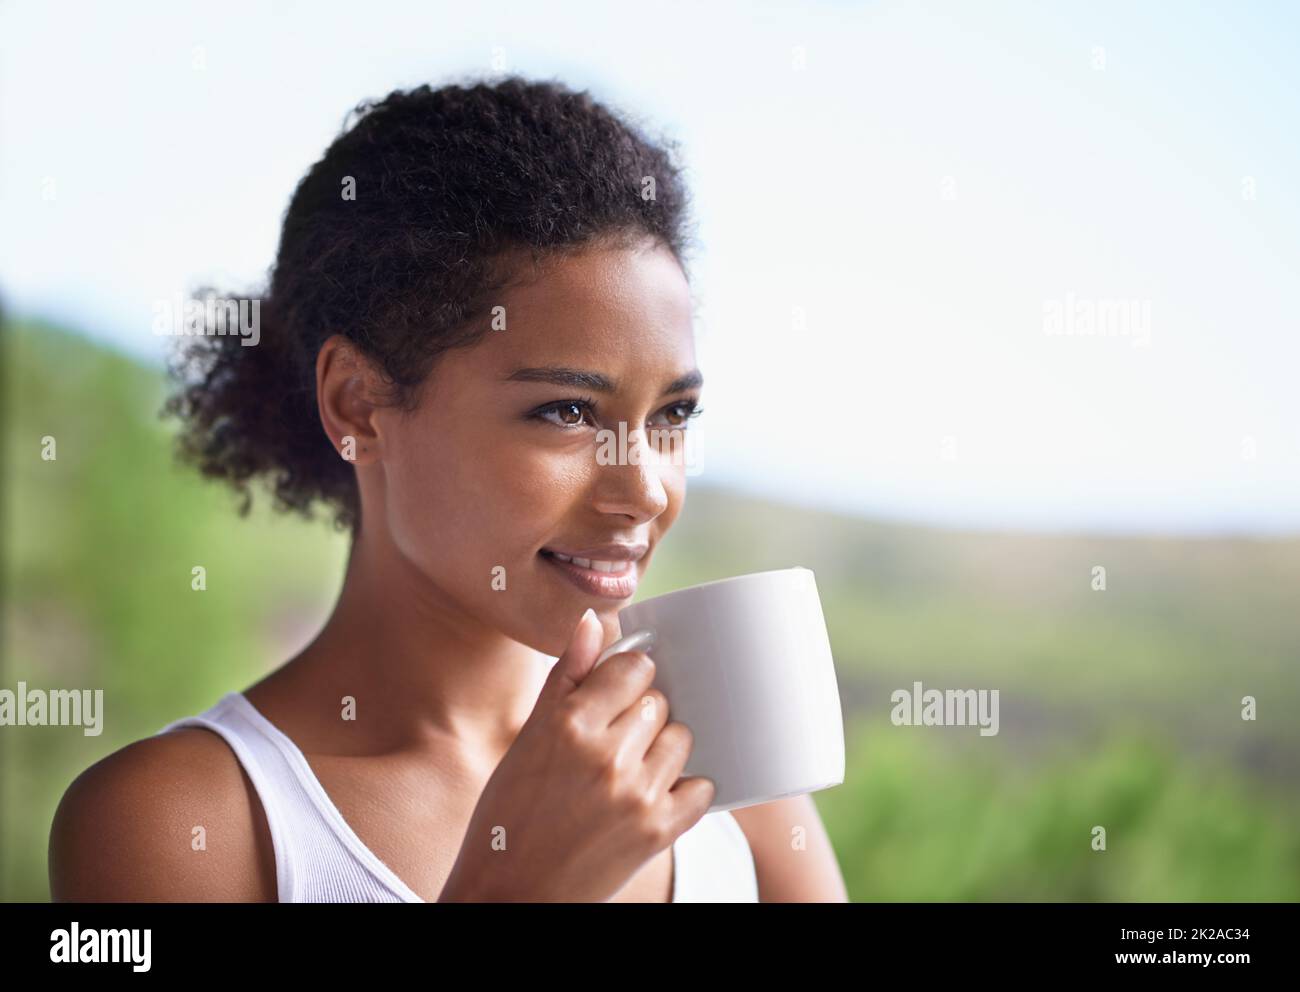 Saluto il sole del mattino con un sorriso. Scatto corto di una giovane donna godendo una tazza di caffè. Foto Stock